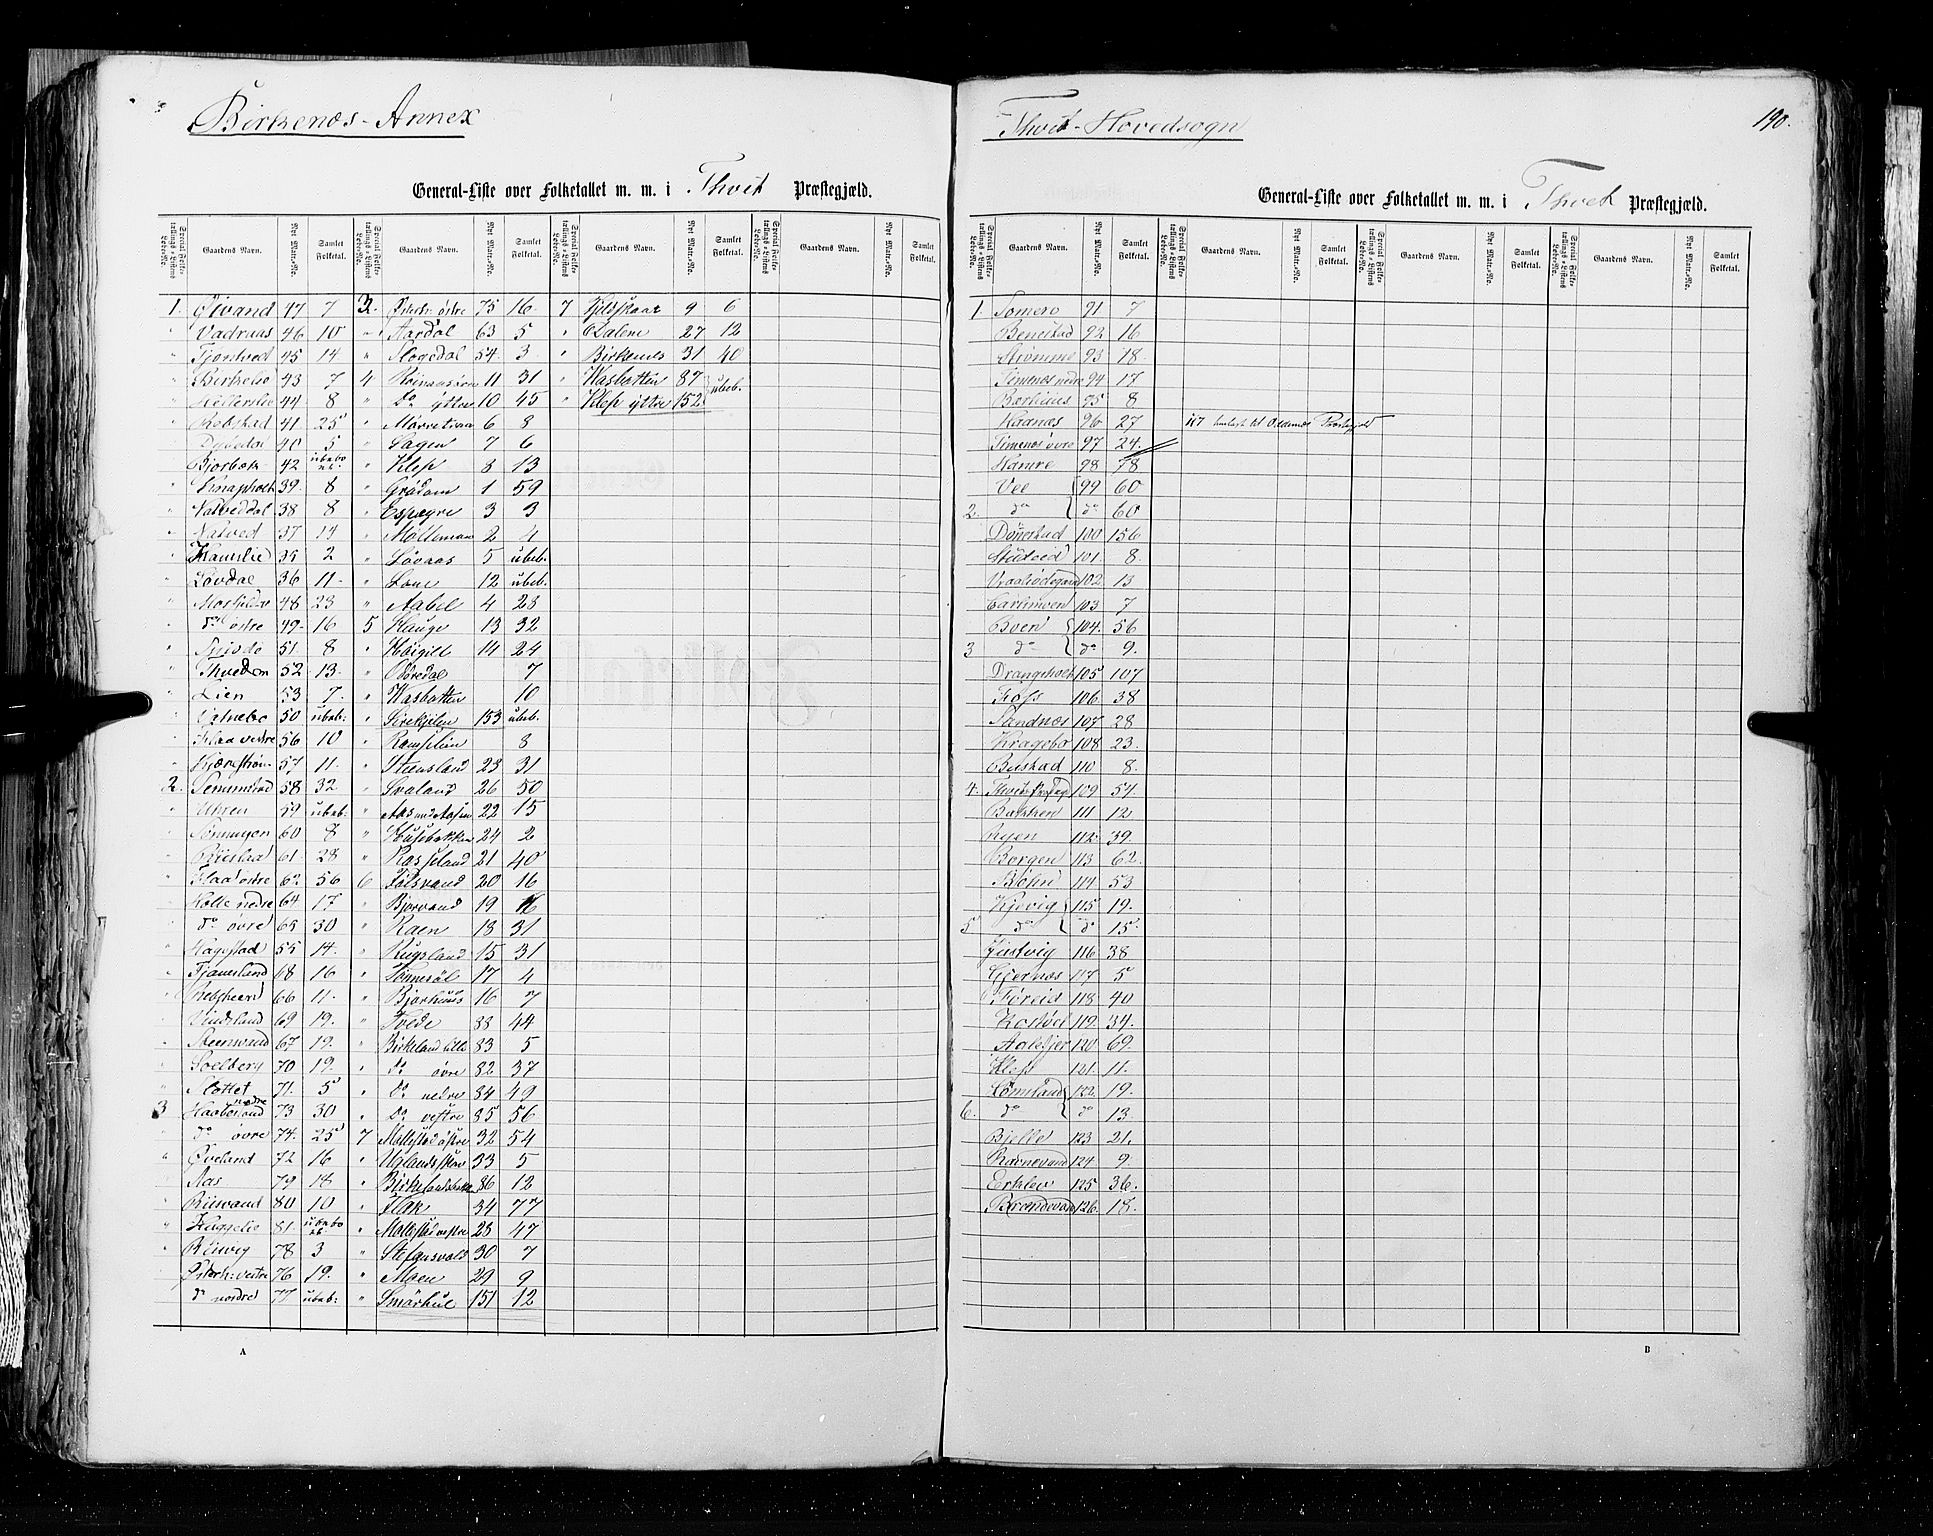 RA, Census 1855, vol. 3: Bratsberg amt, Nedenes amt og Lister og Mandal amt, 1855, p. 190